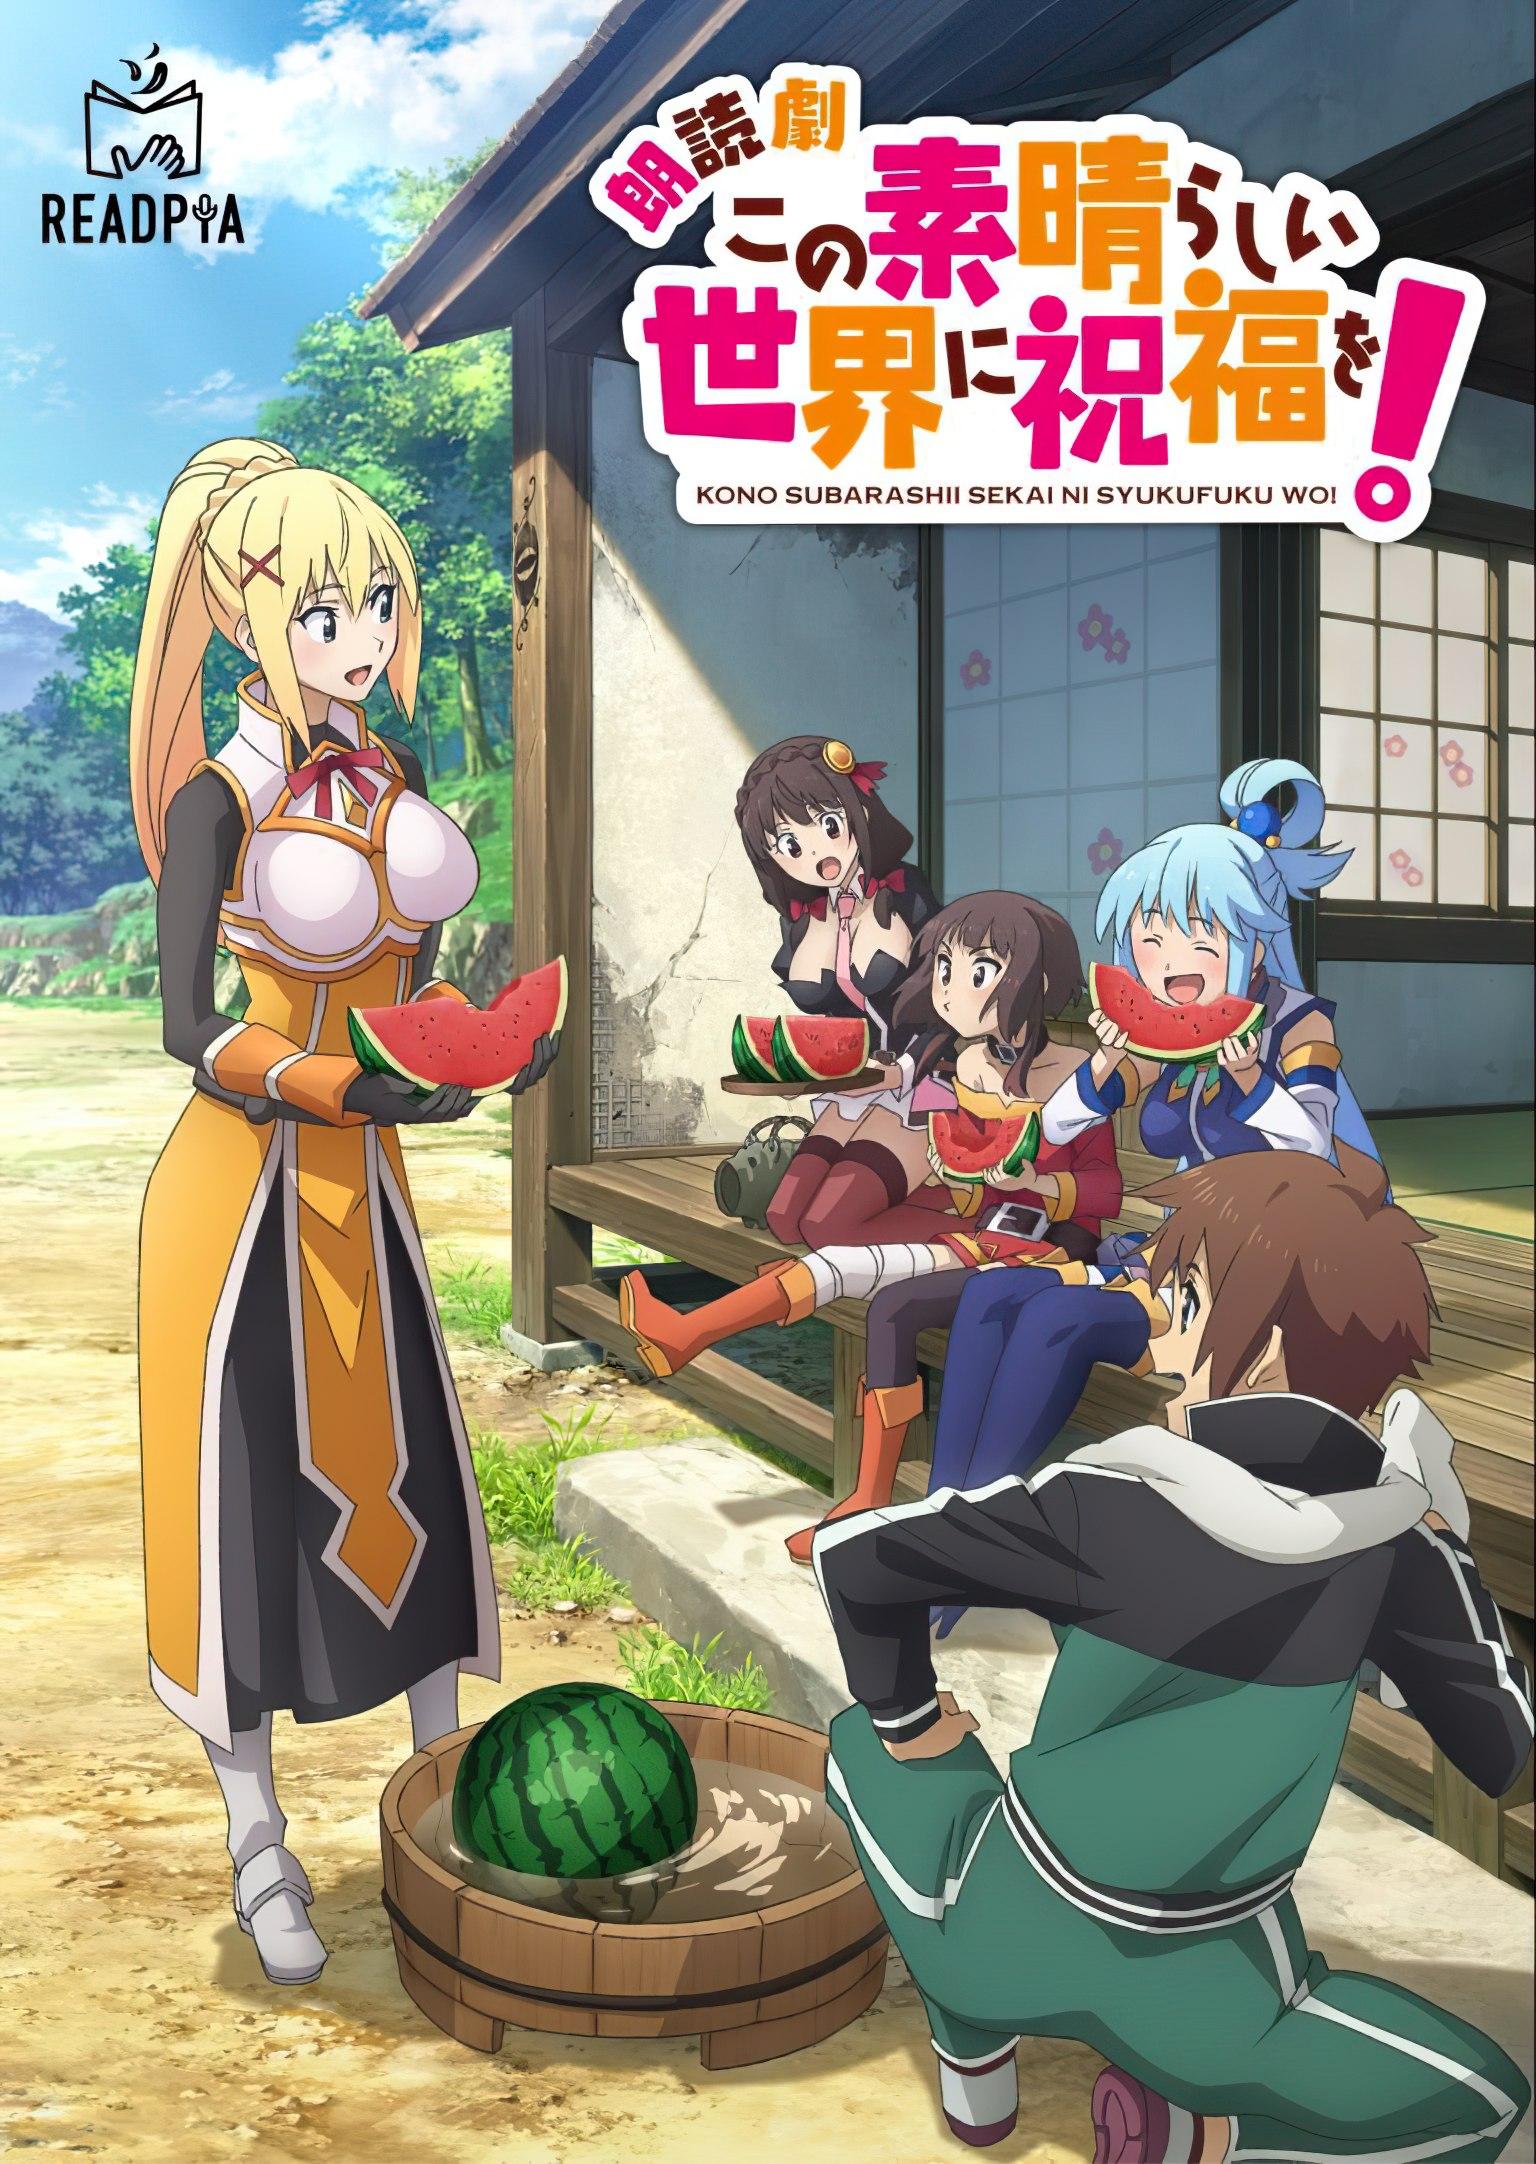 El anime KonoSuba! tendrá una tercera temporada y cambiará de